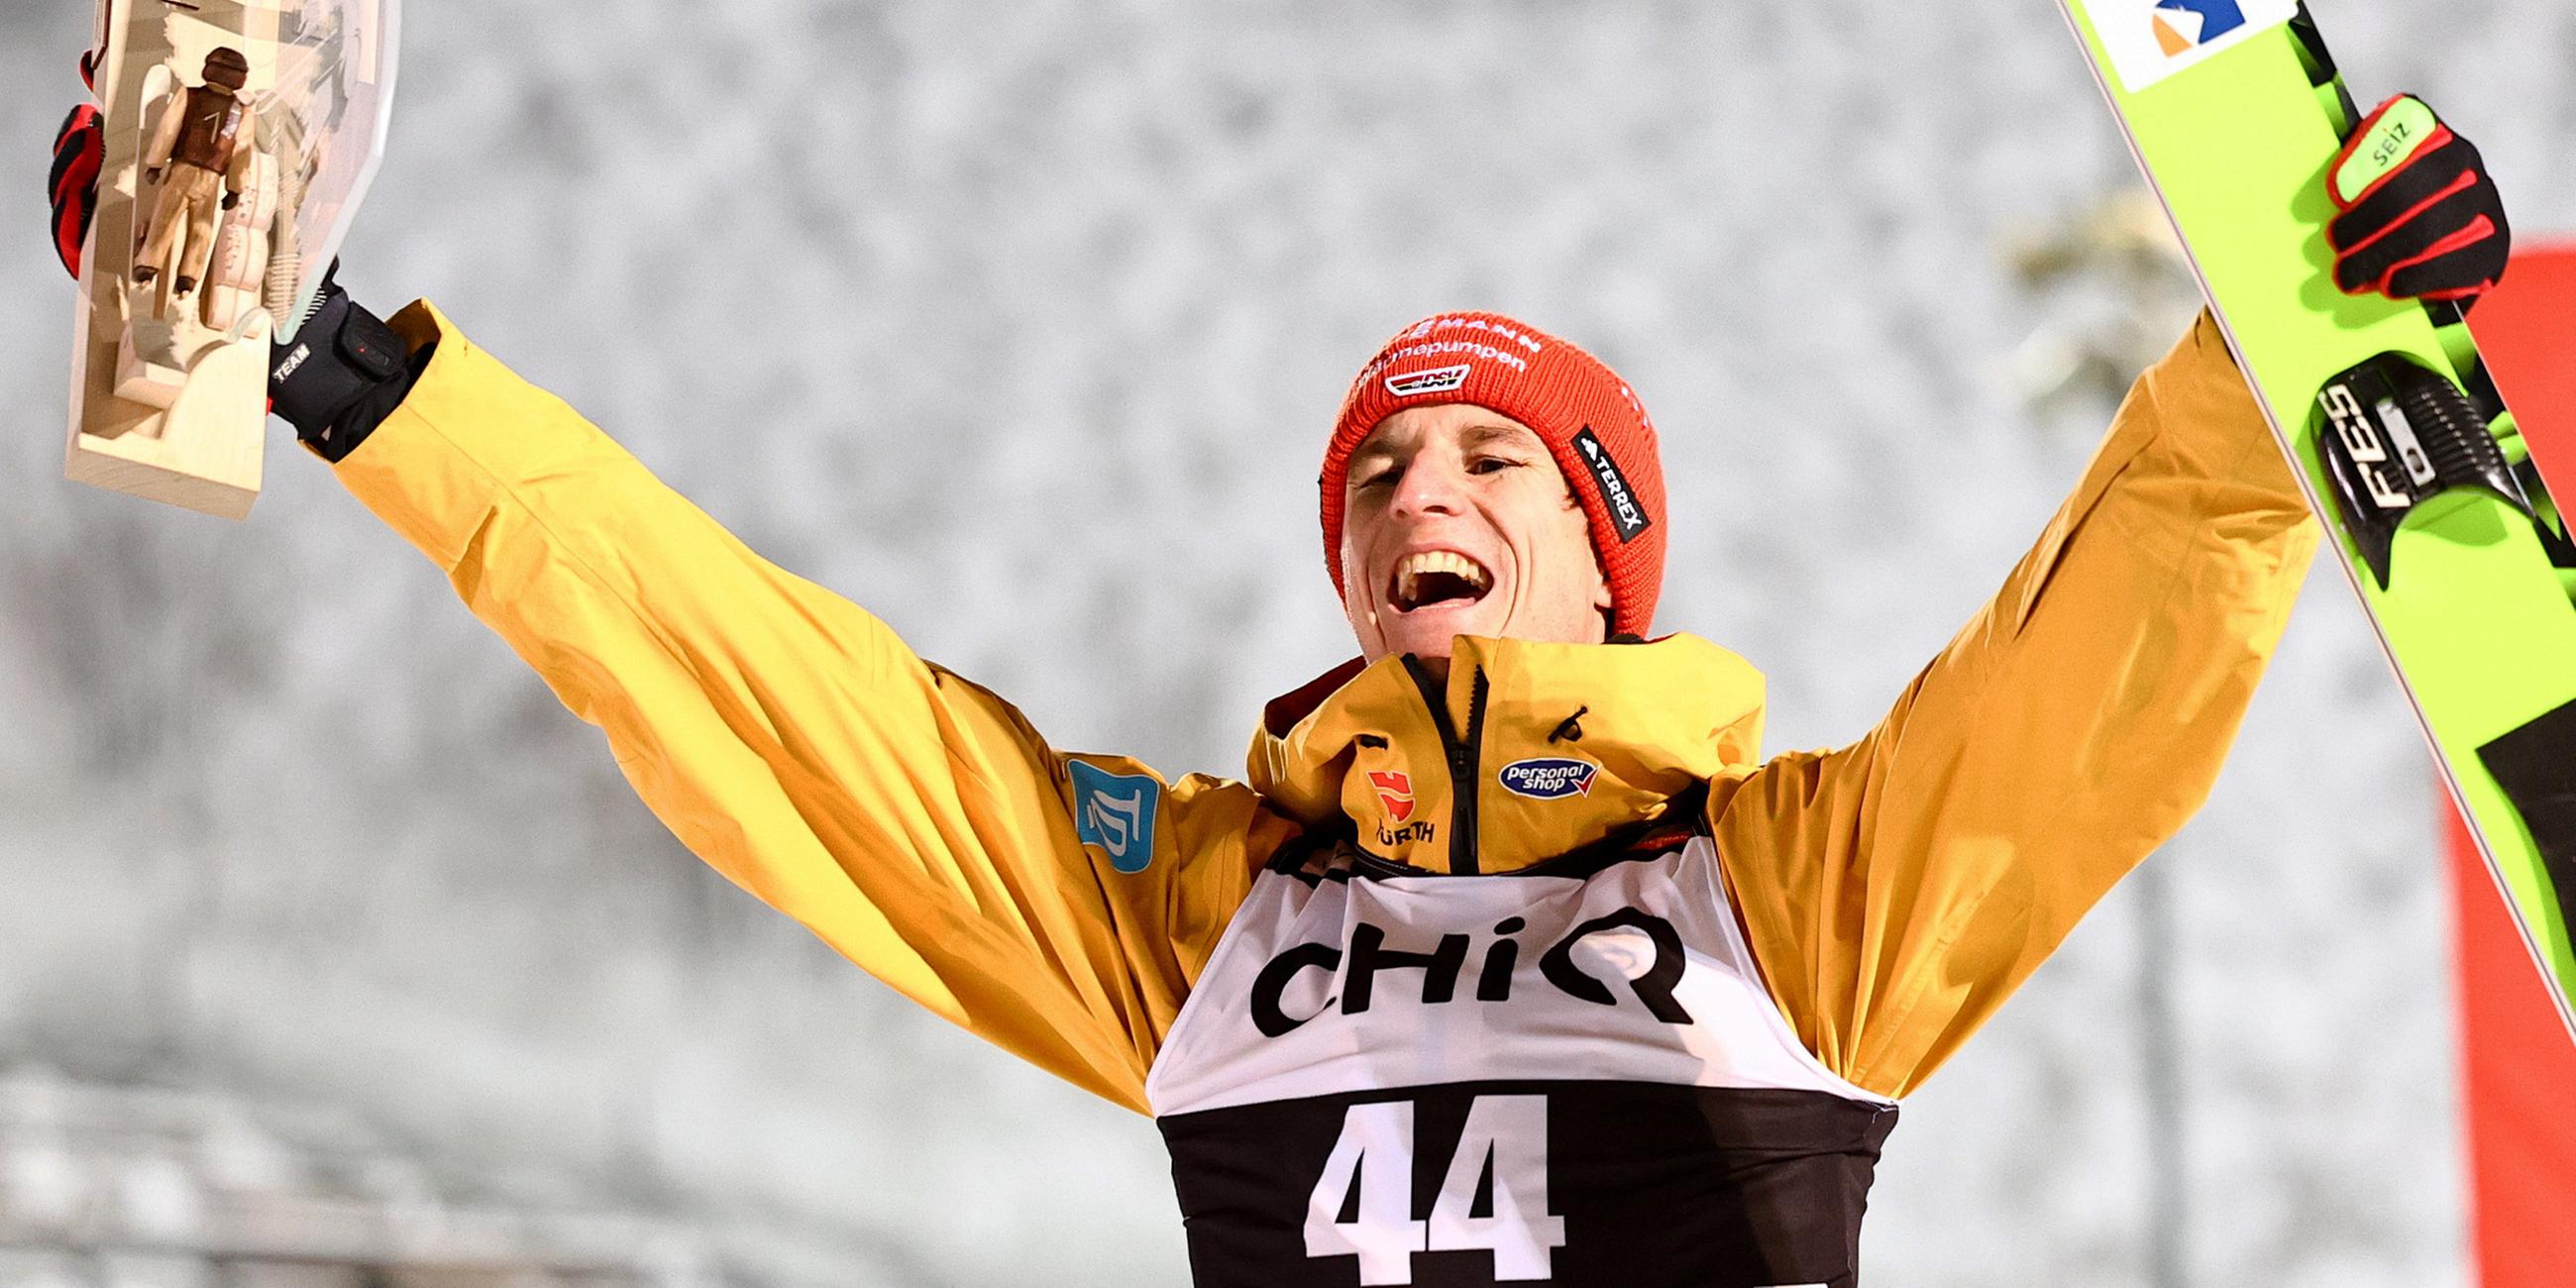 Karl Geiger bejubelt seinen Sieg bei der Weltmeisterschaft im Skispringen in Klingenthal.